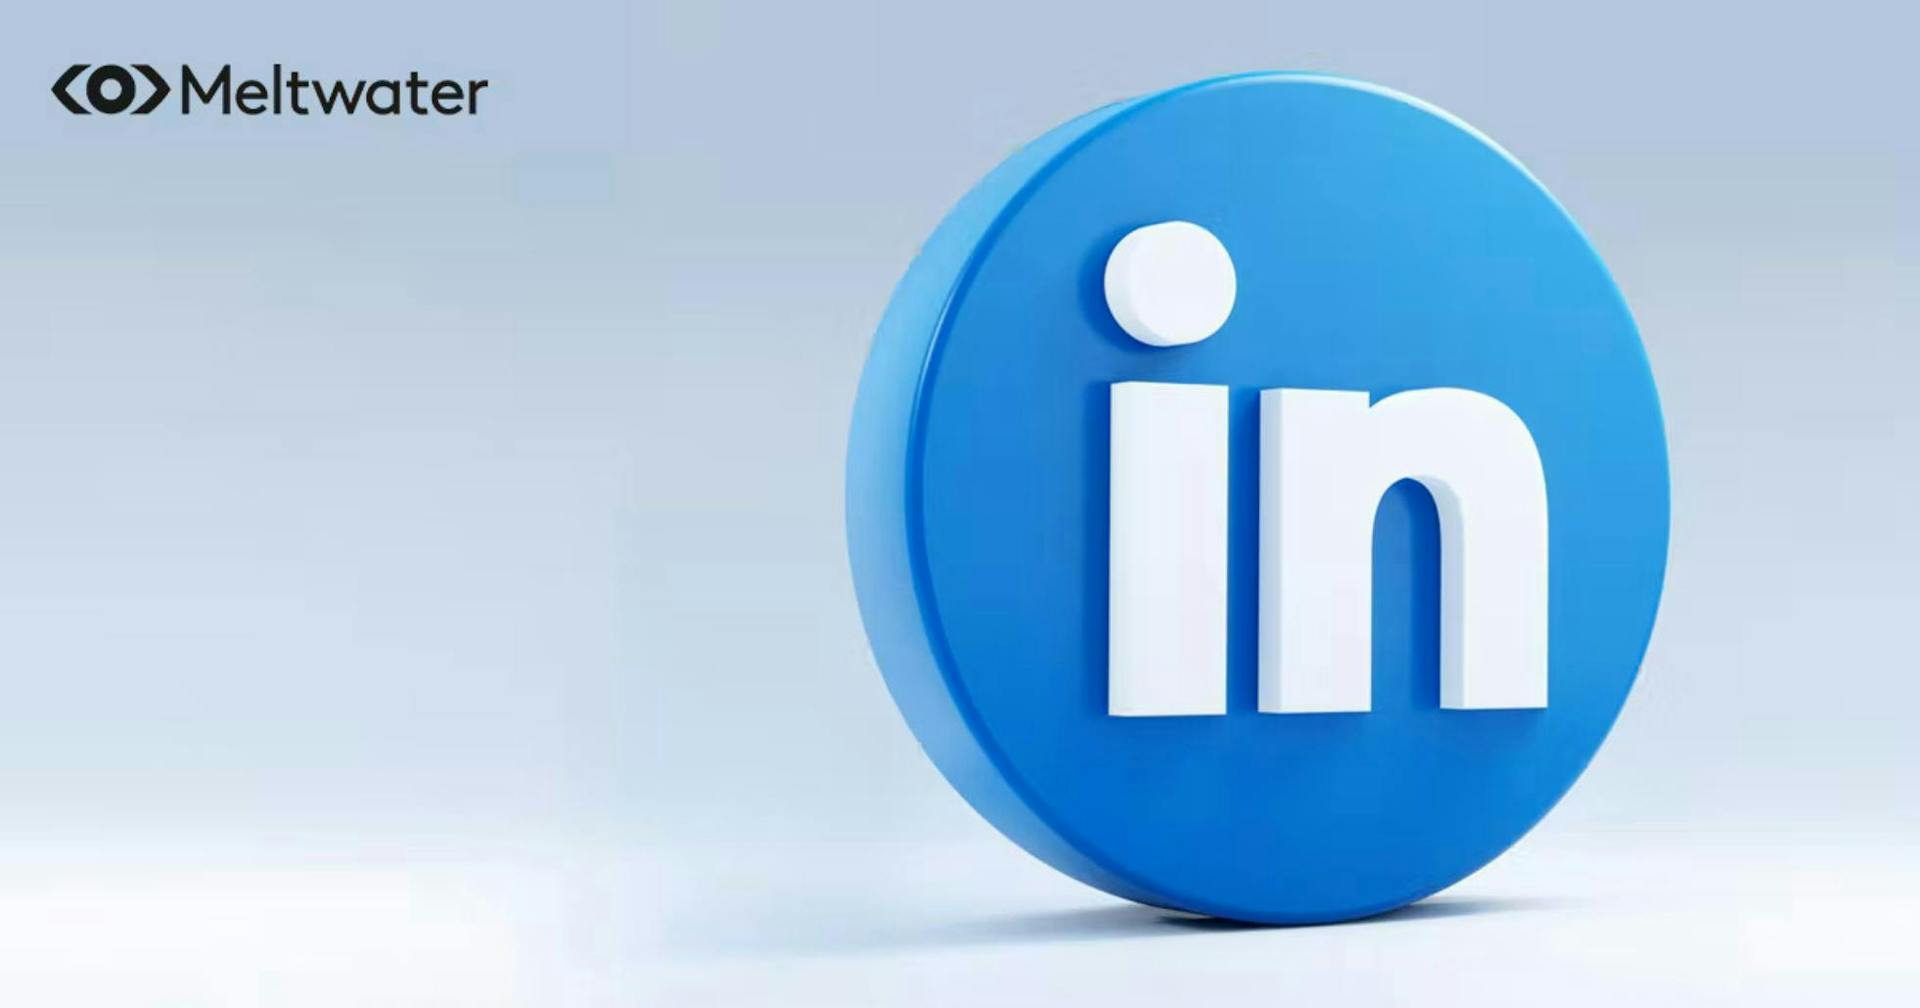 Het LinkedIn logo staat tegen een blauw grijze achtergrond met Meltwater in de linker bovenhoek